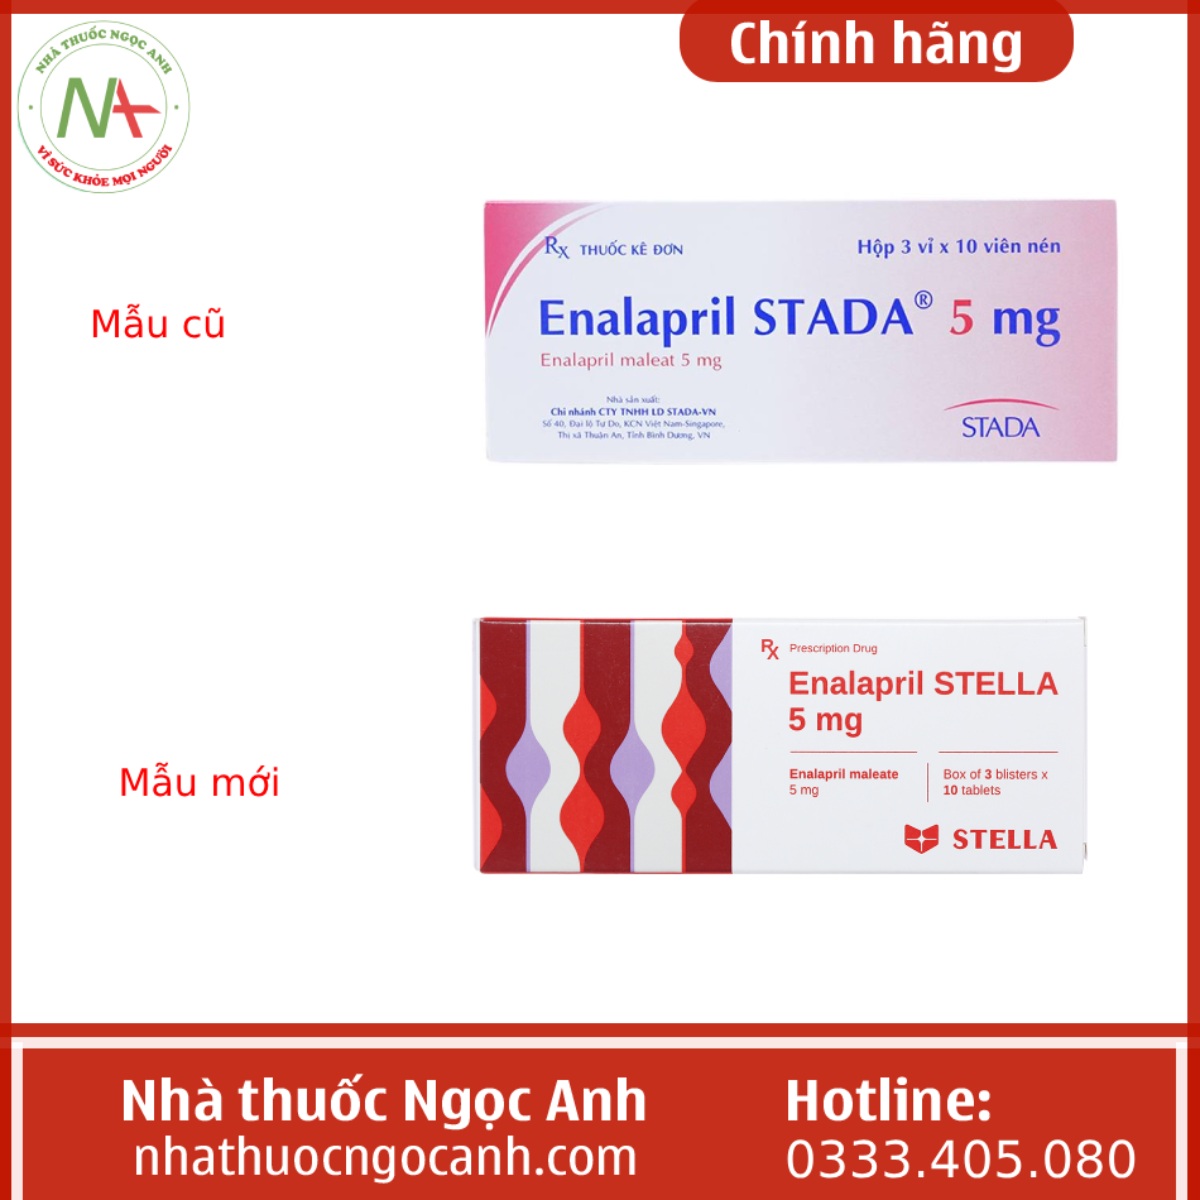 Enalapril Stella 5 mg mẫu cũ và mẫu mới